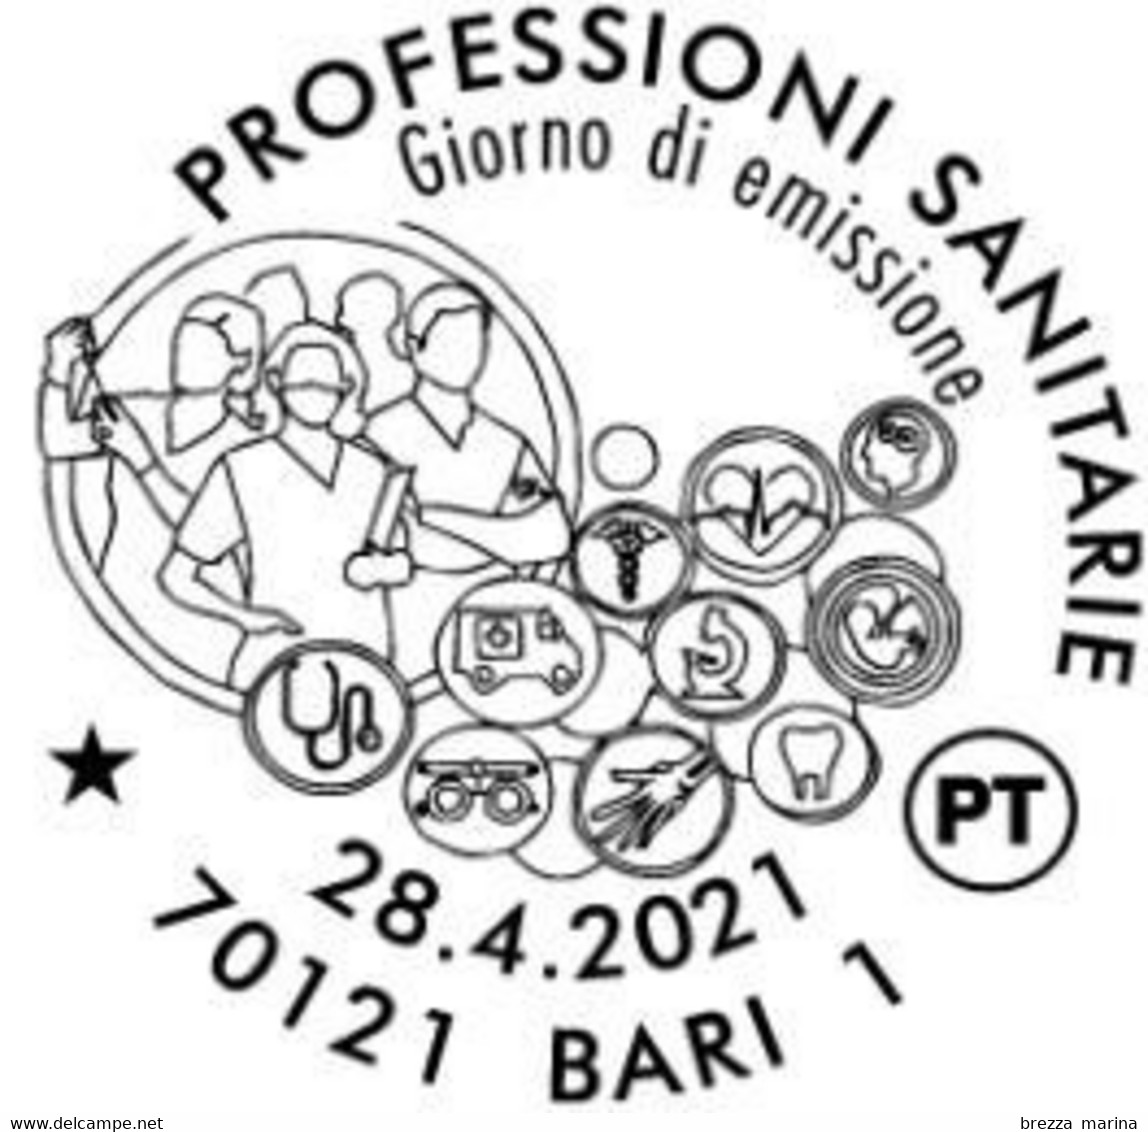 Nuovo - MNH - ITALIA - 2021 - Professioni Sanitarie – Sagome E Figure Stilizzate - B - Alfanumerico - 2021-...: Nieuw/plakker